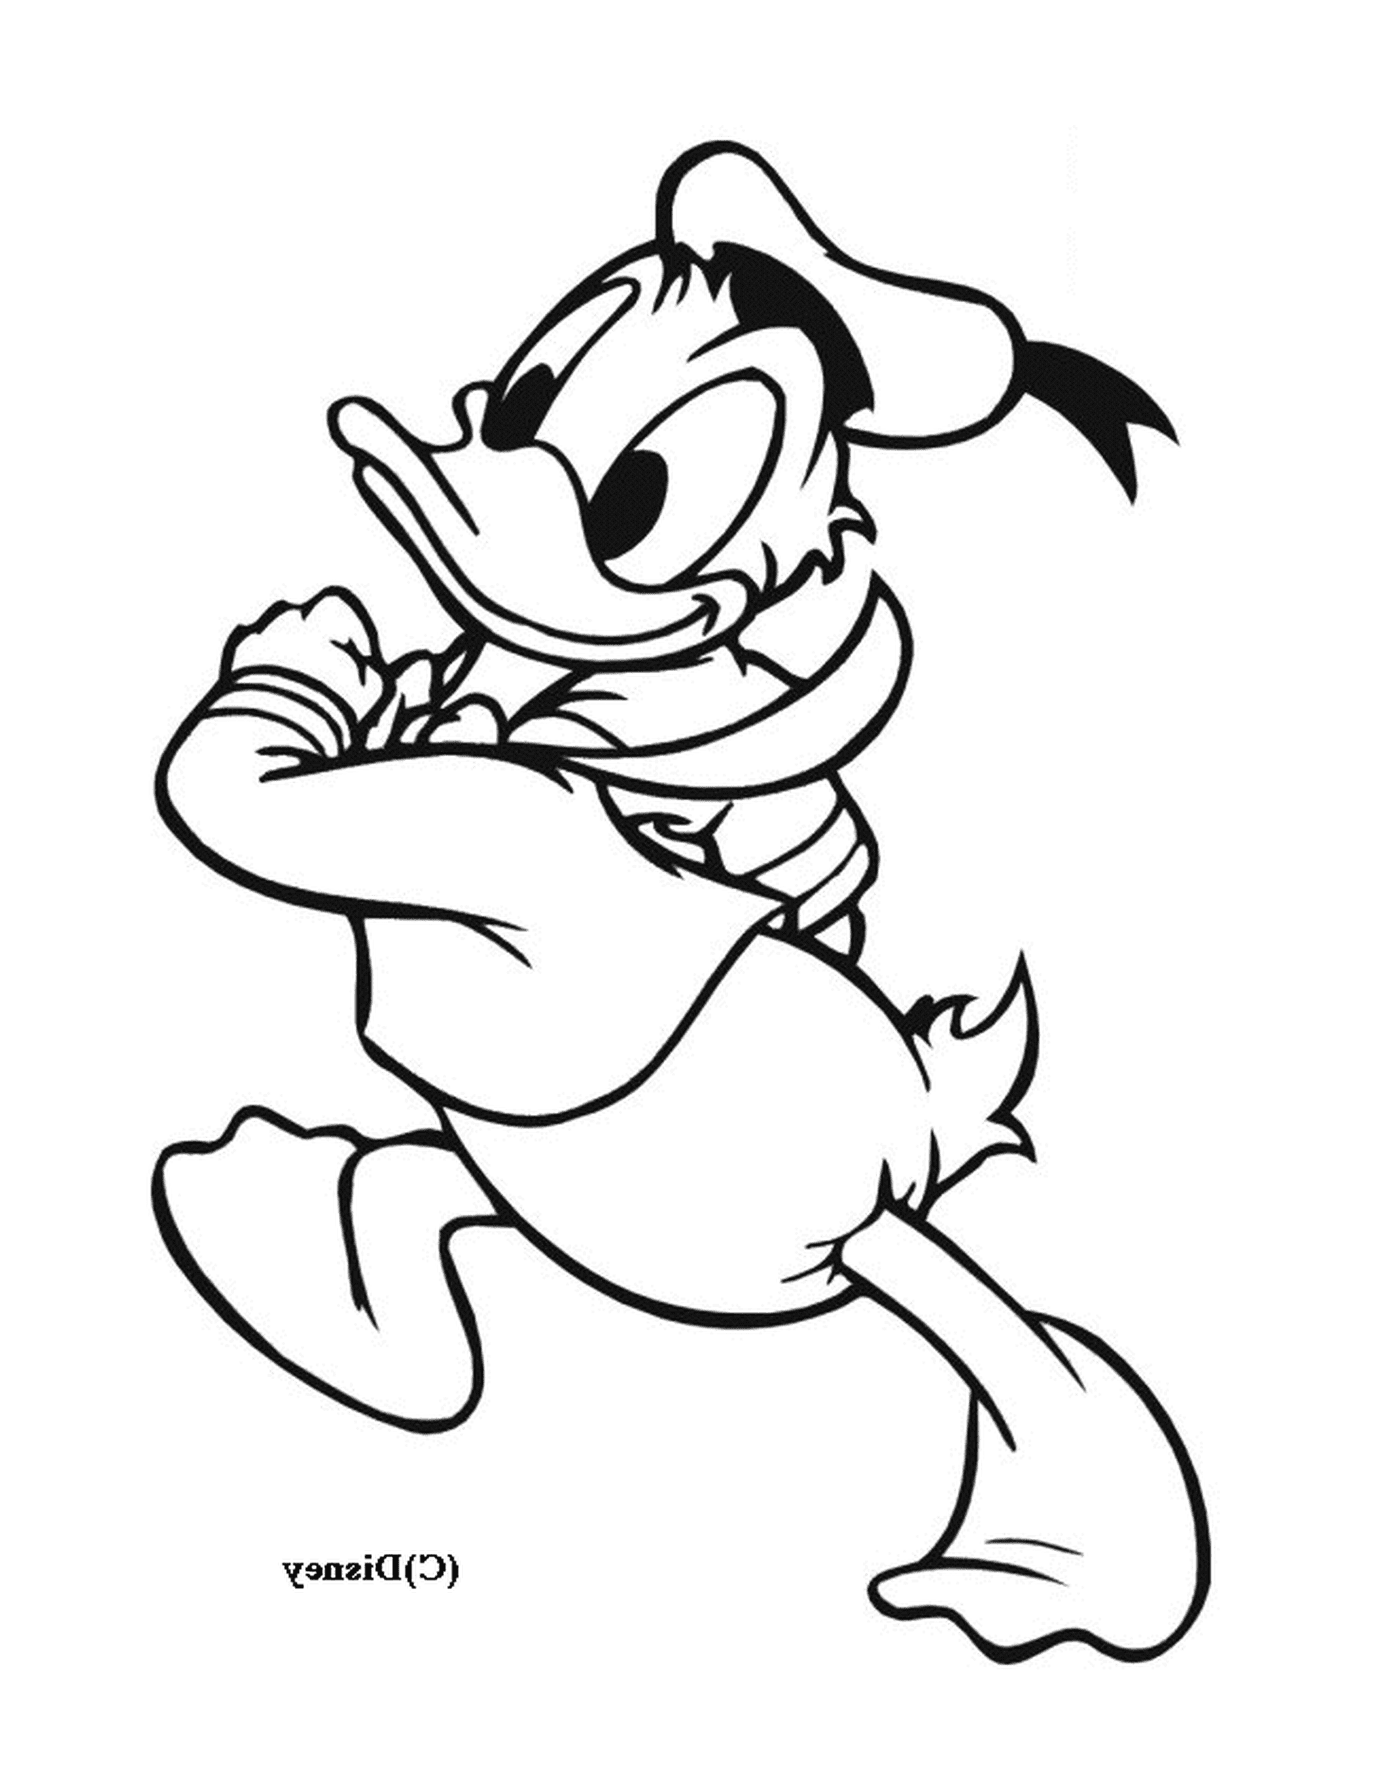   Donald Duck court joyeusement avec une corde 